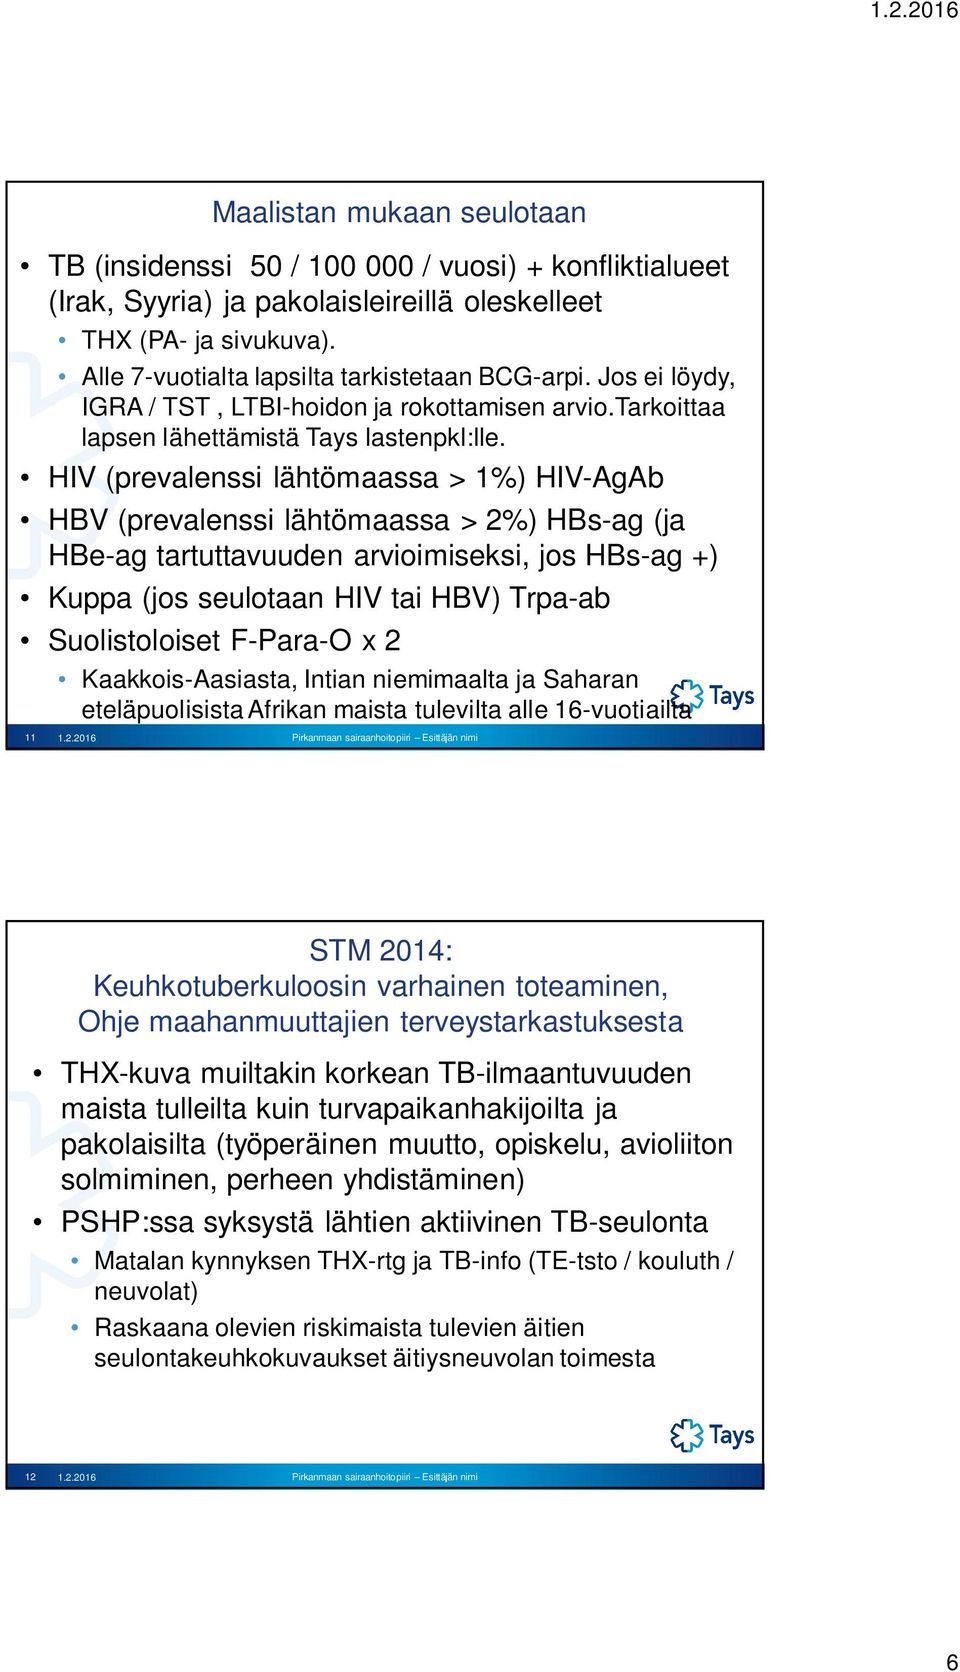 HIV (prevalenssi lähtömaassa > 1%) HIV-AgAb HBV (prevalenssi lähtömaassa > 2%) HBs-ag (ja HBe-ag tartuttavuuden arvioimiseksi, jos HBs-ag +) Kuppa (jos seulotaan HIV tai HBV) Trpa-ab Suolistoloiset